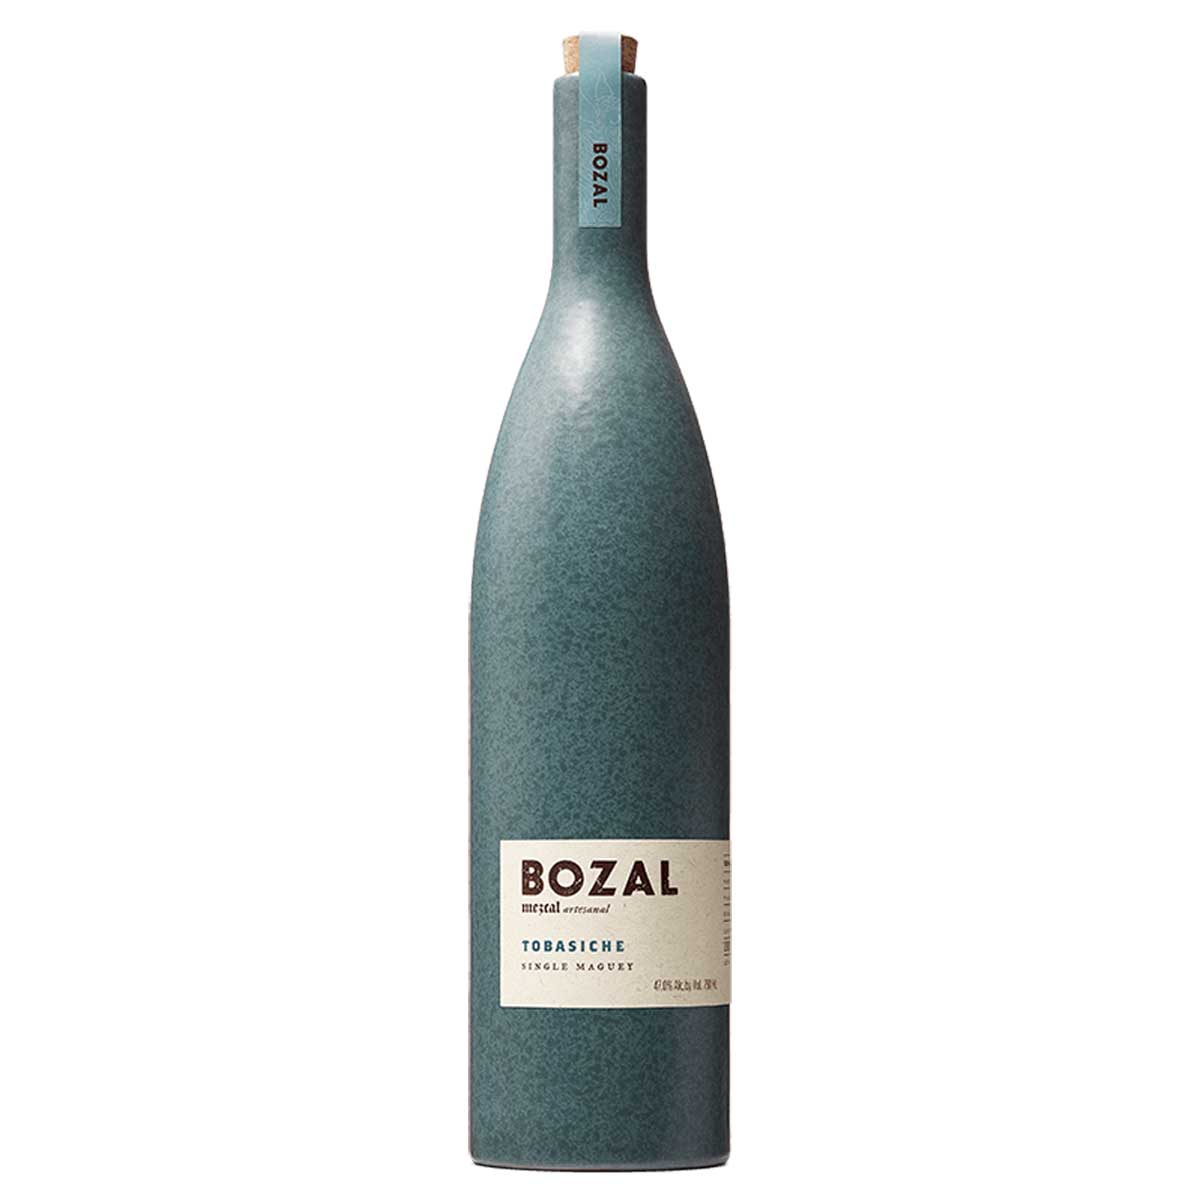 TAG Liquor Stores BC - Bozal Mezcal Tobasiche single maguey 750ml